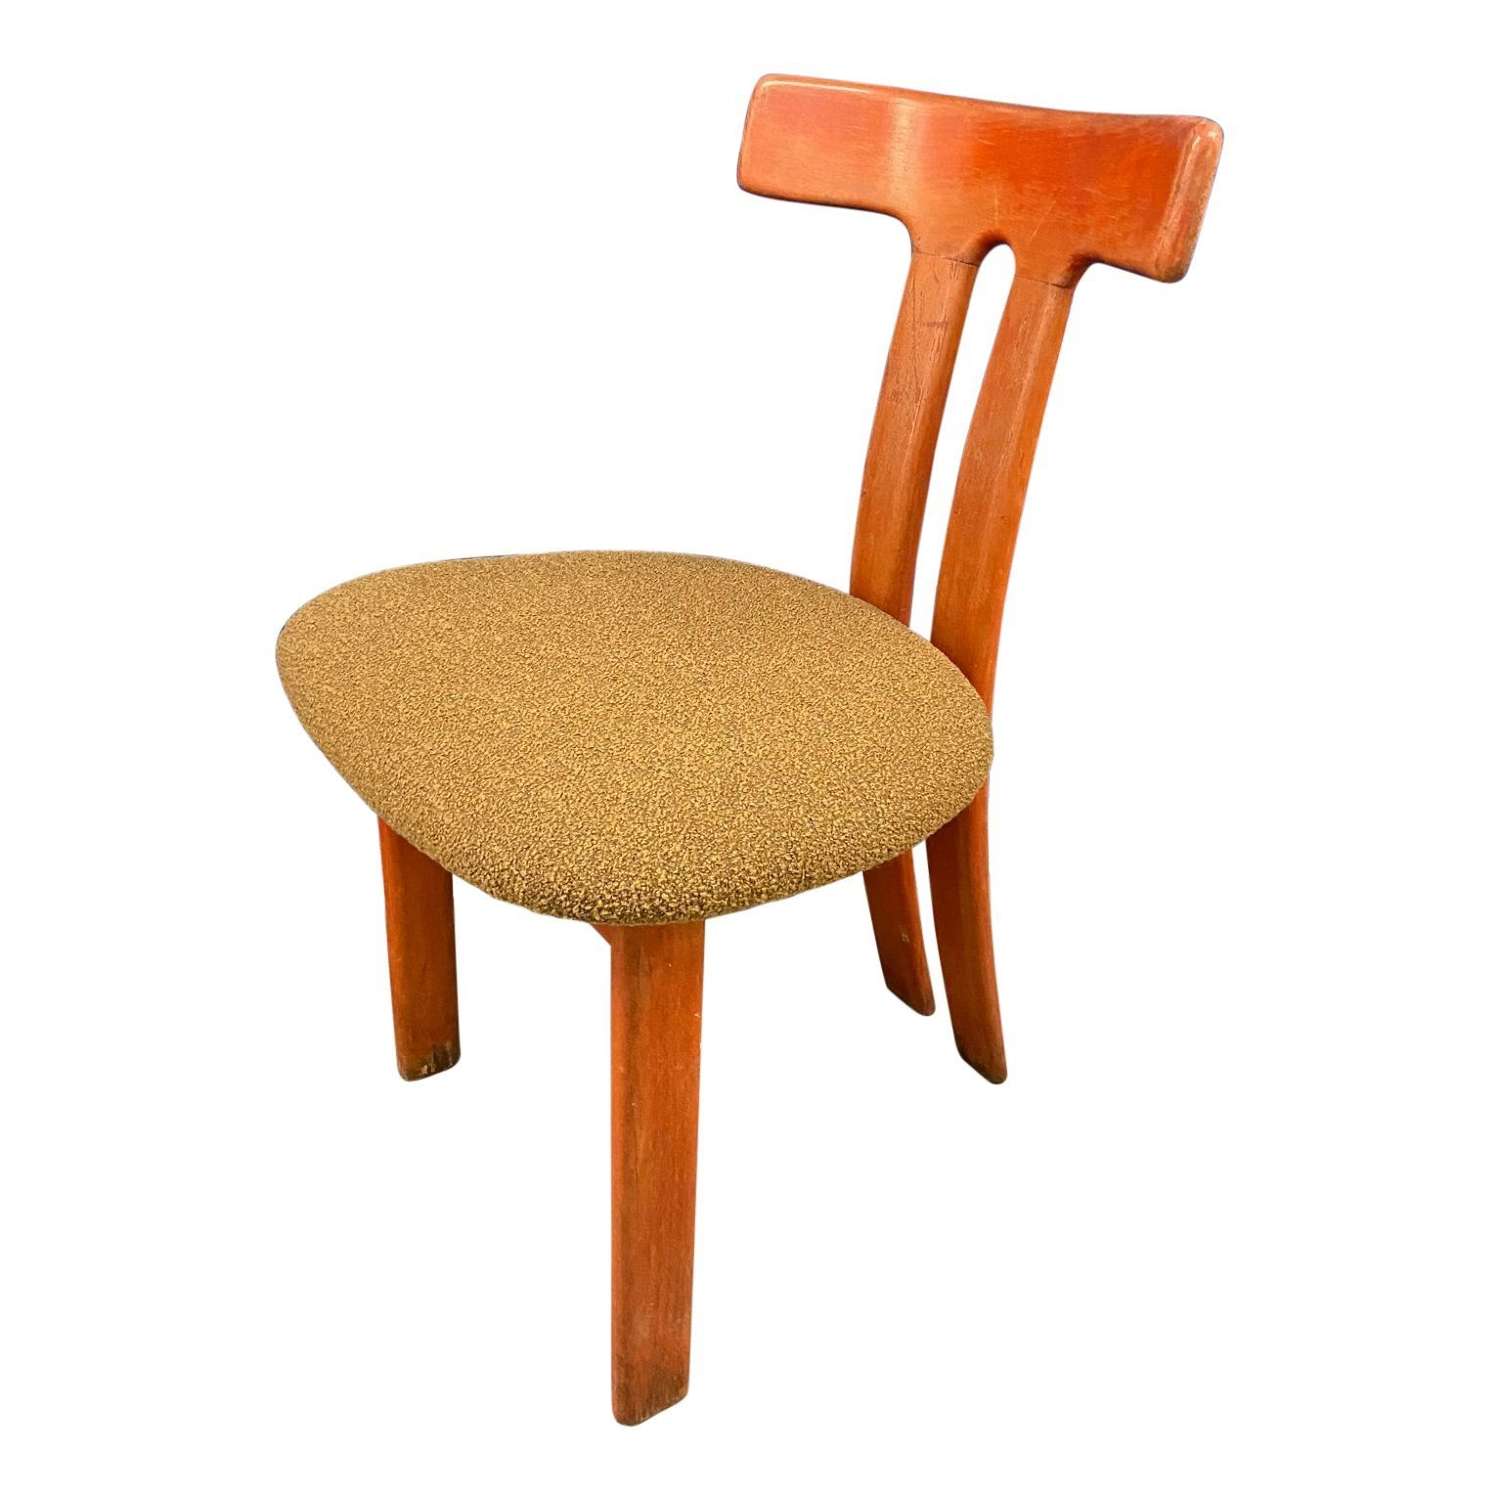 1960's Danish chair